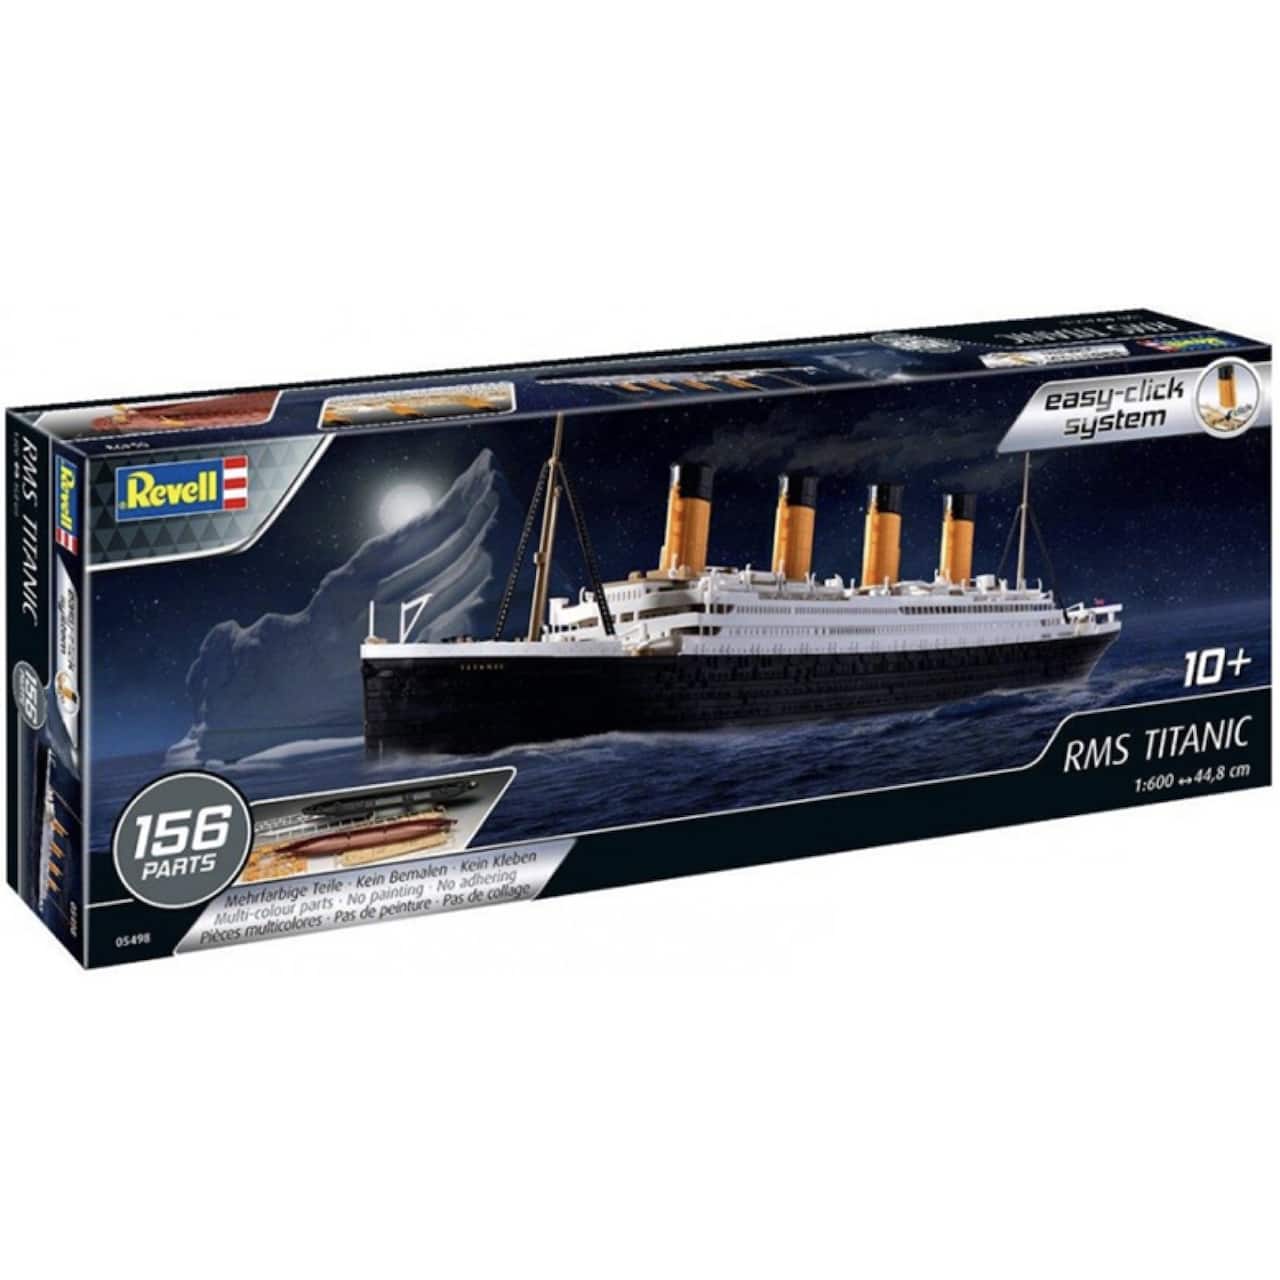 Rms Titanic Plastic Model Kit